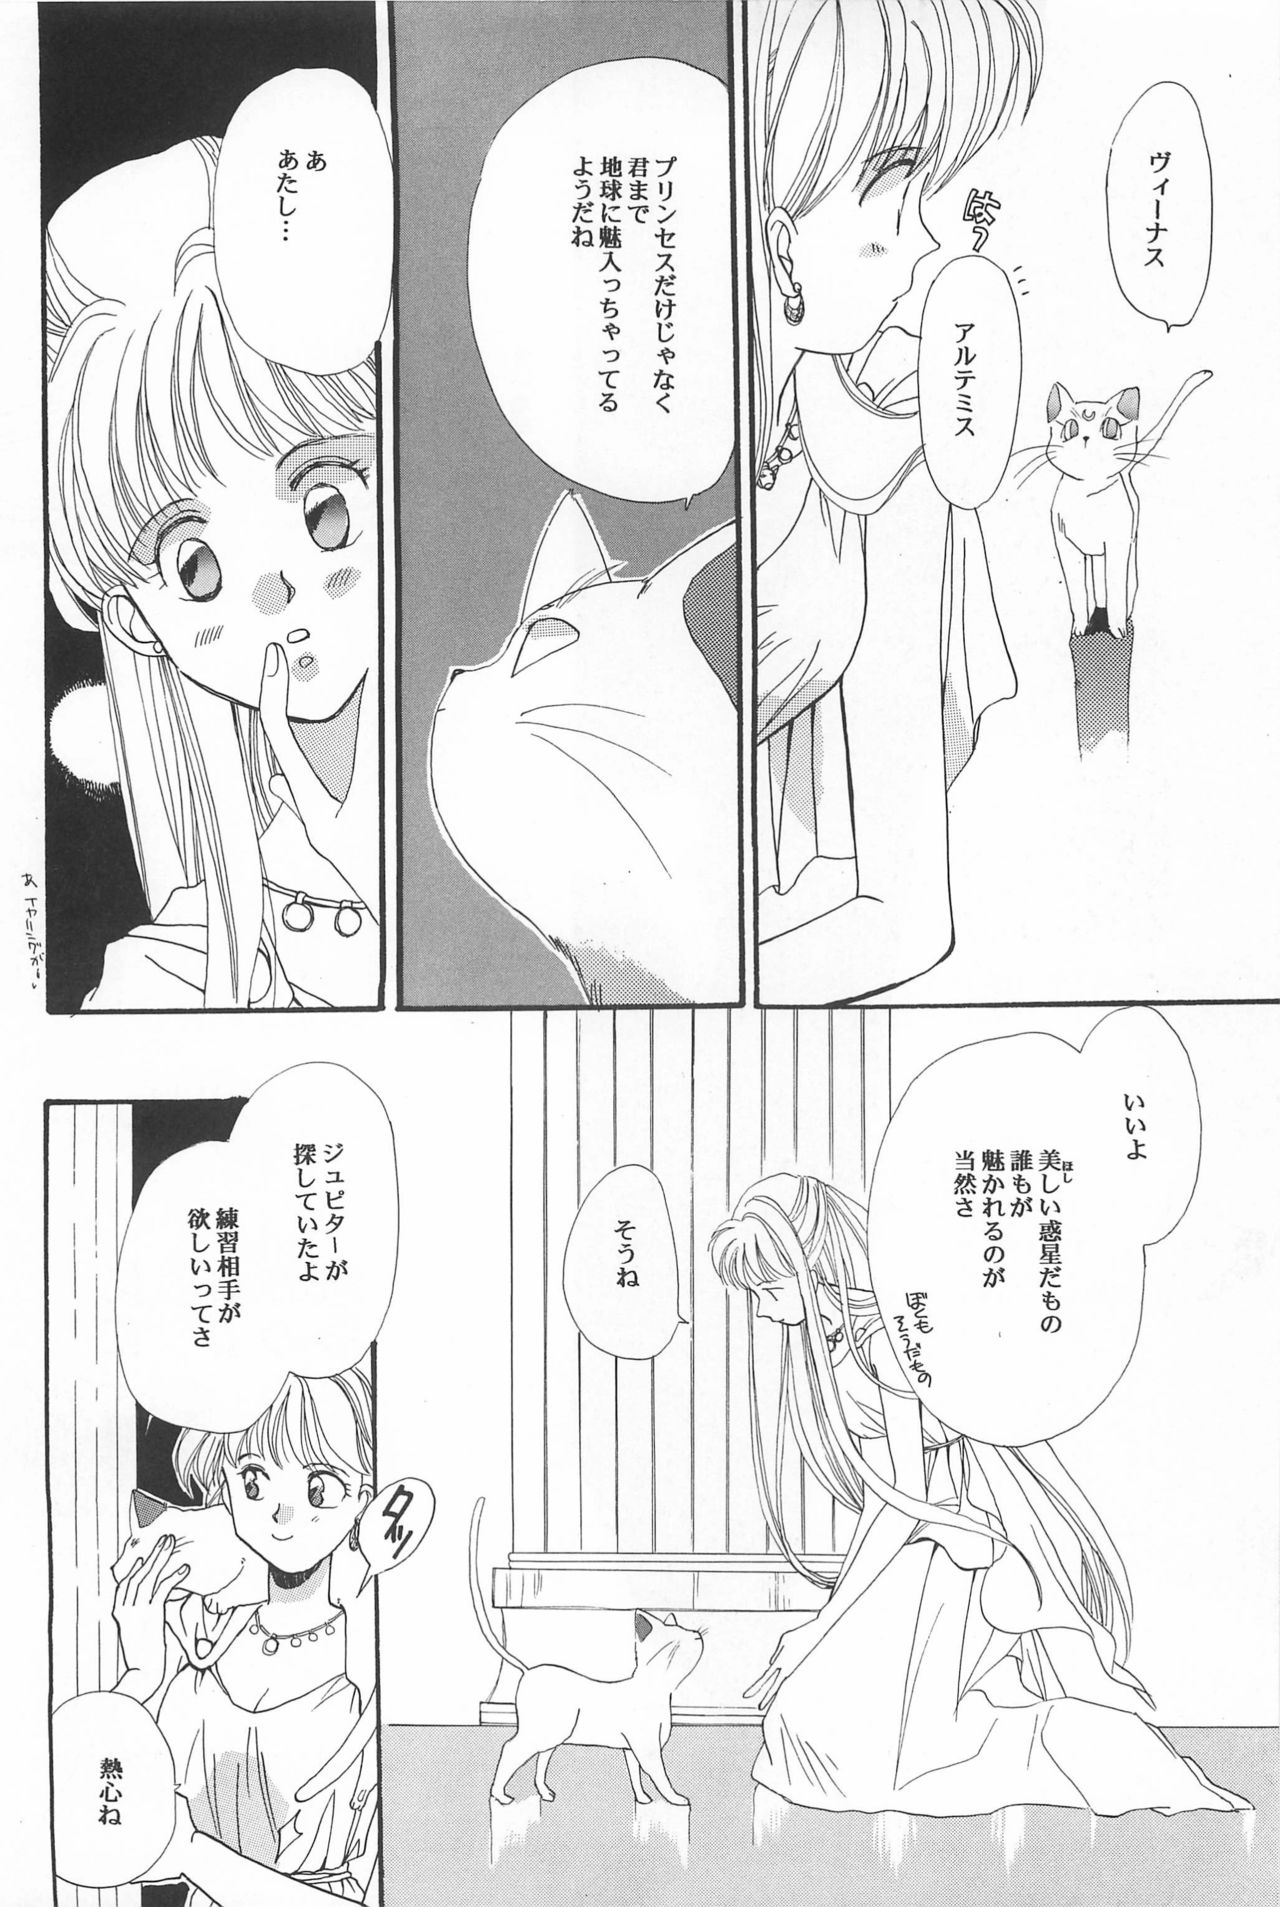 [Hello World (Muttri Moony)] Kaze no You ni Yume no You ni - Sailor Moon Collection (Sailor Moon) 103